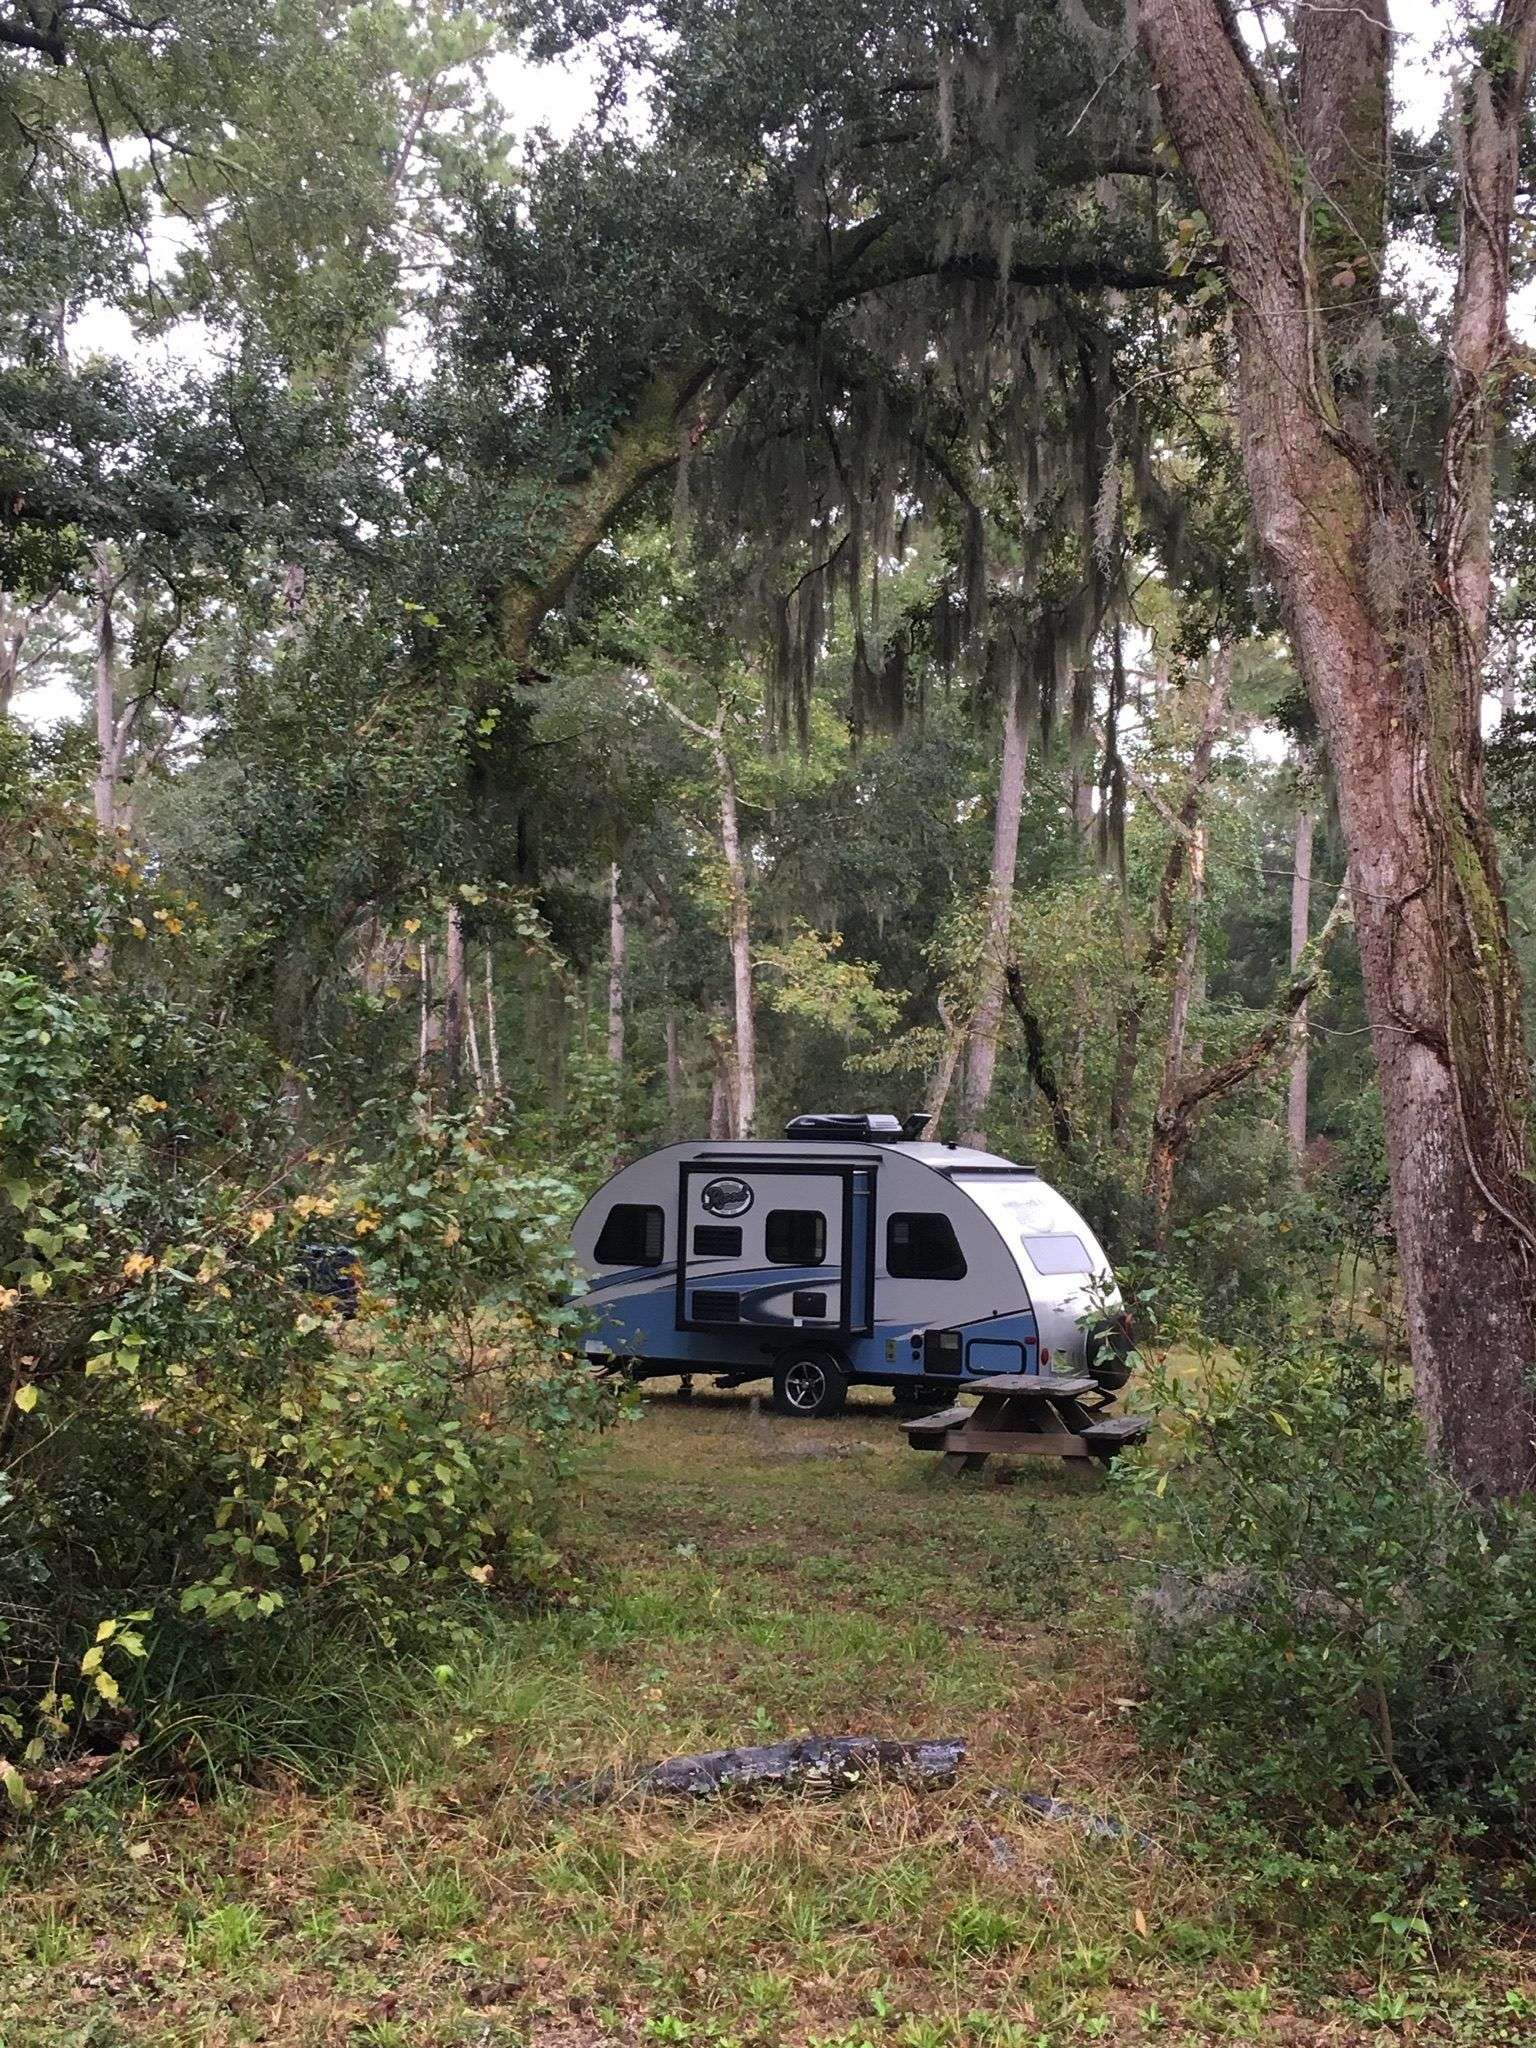 Free coastal camping in South Carolina " We stayed at ...